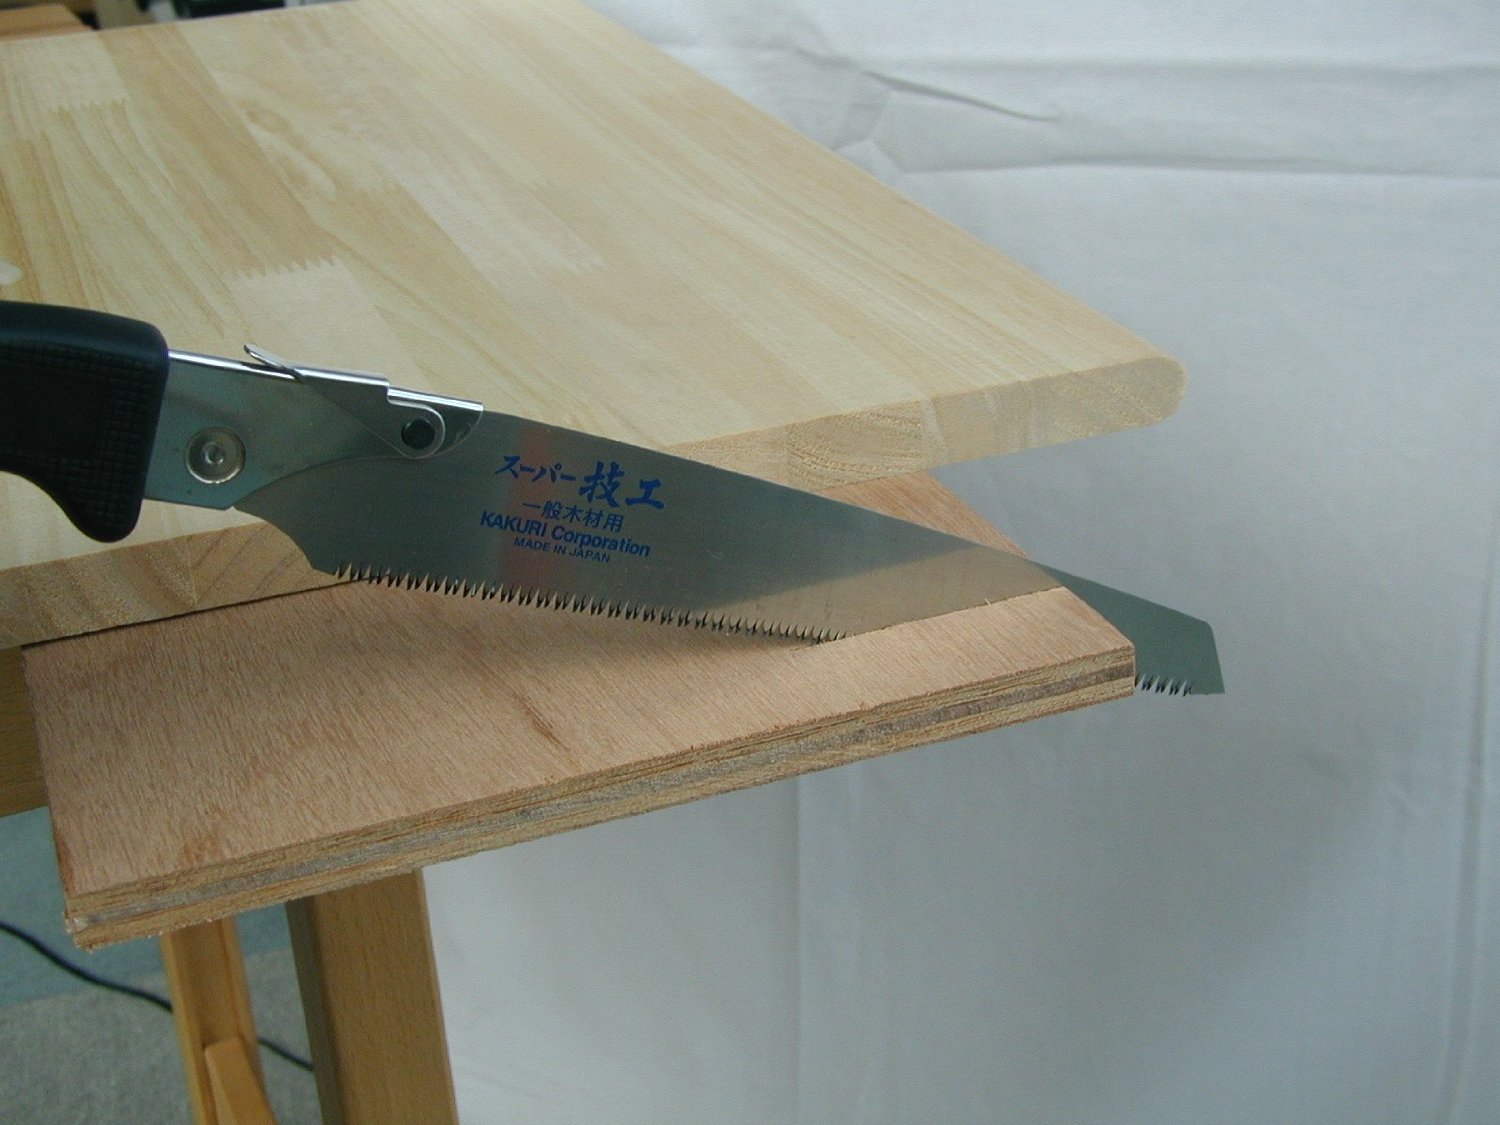 KAKURI スーパー技工 替刃式鋸 210mm 本体 一般木材用 プラケース入